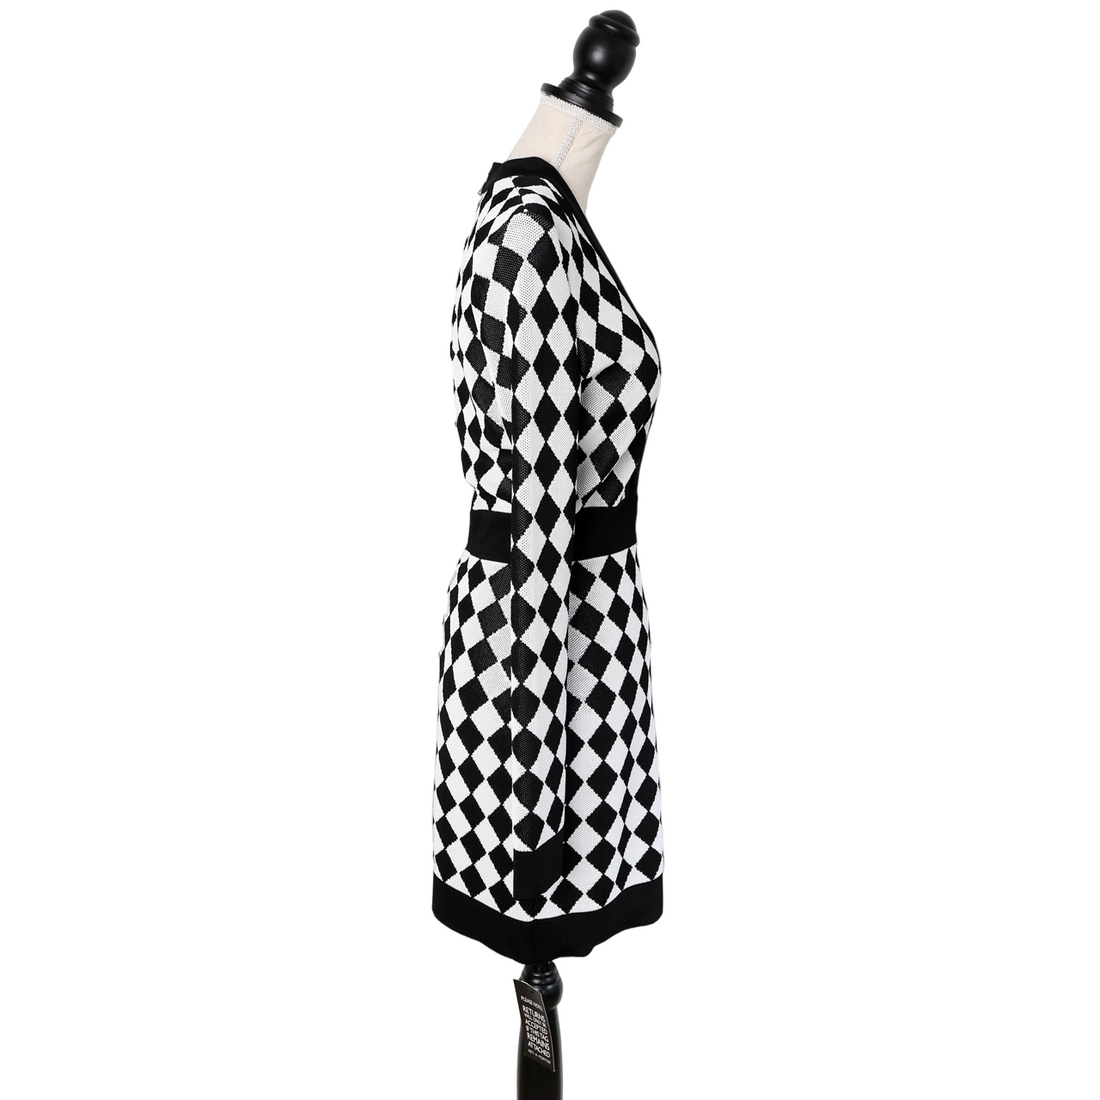 Balmain Bodycon Dress im Schachbrett-Muster